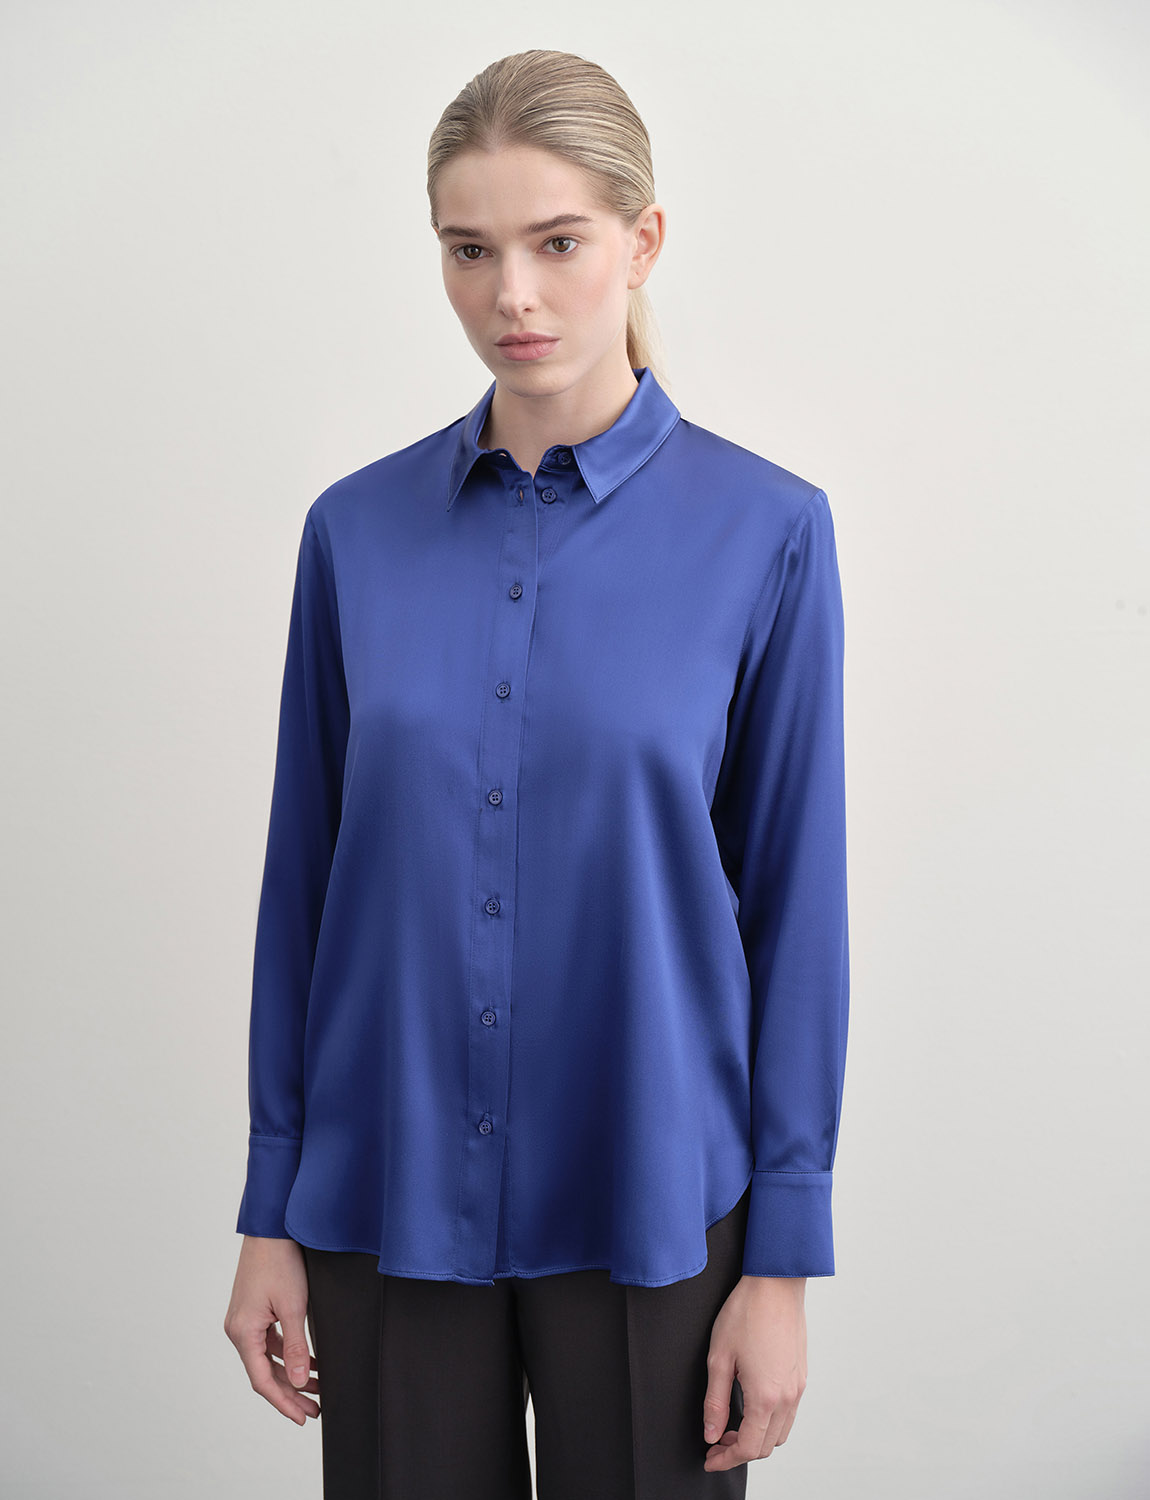 LSWF-102071 Рубашка